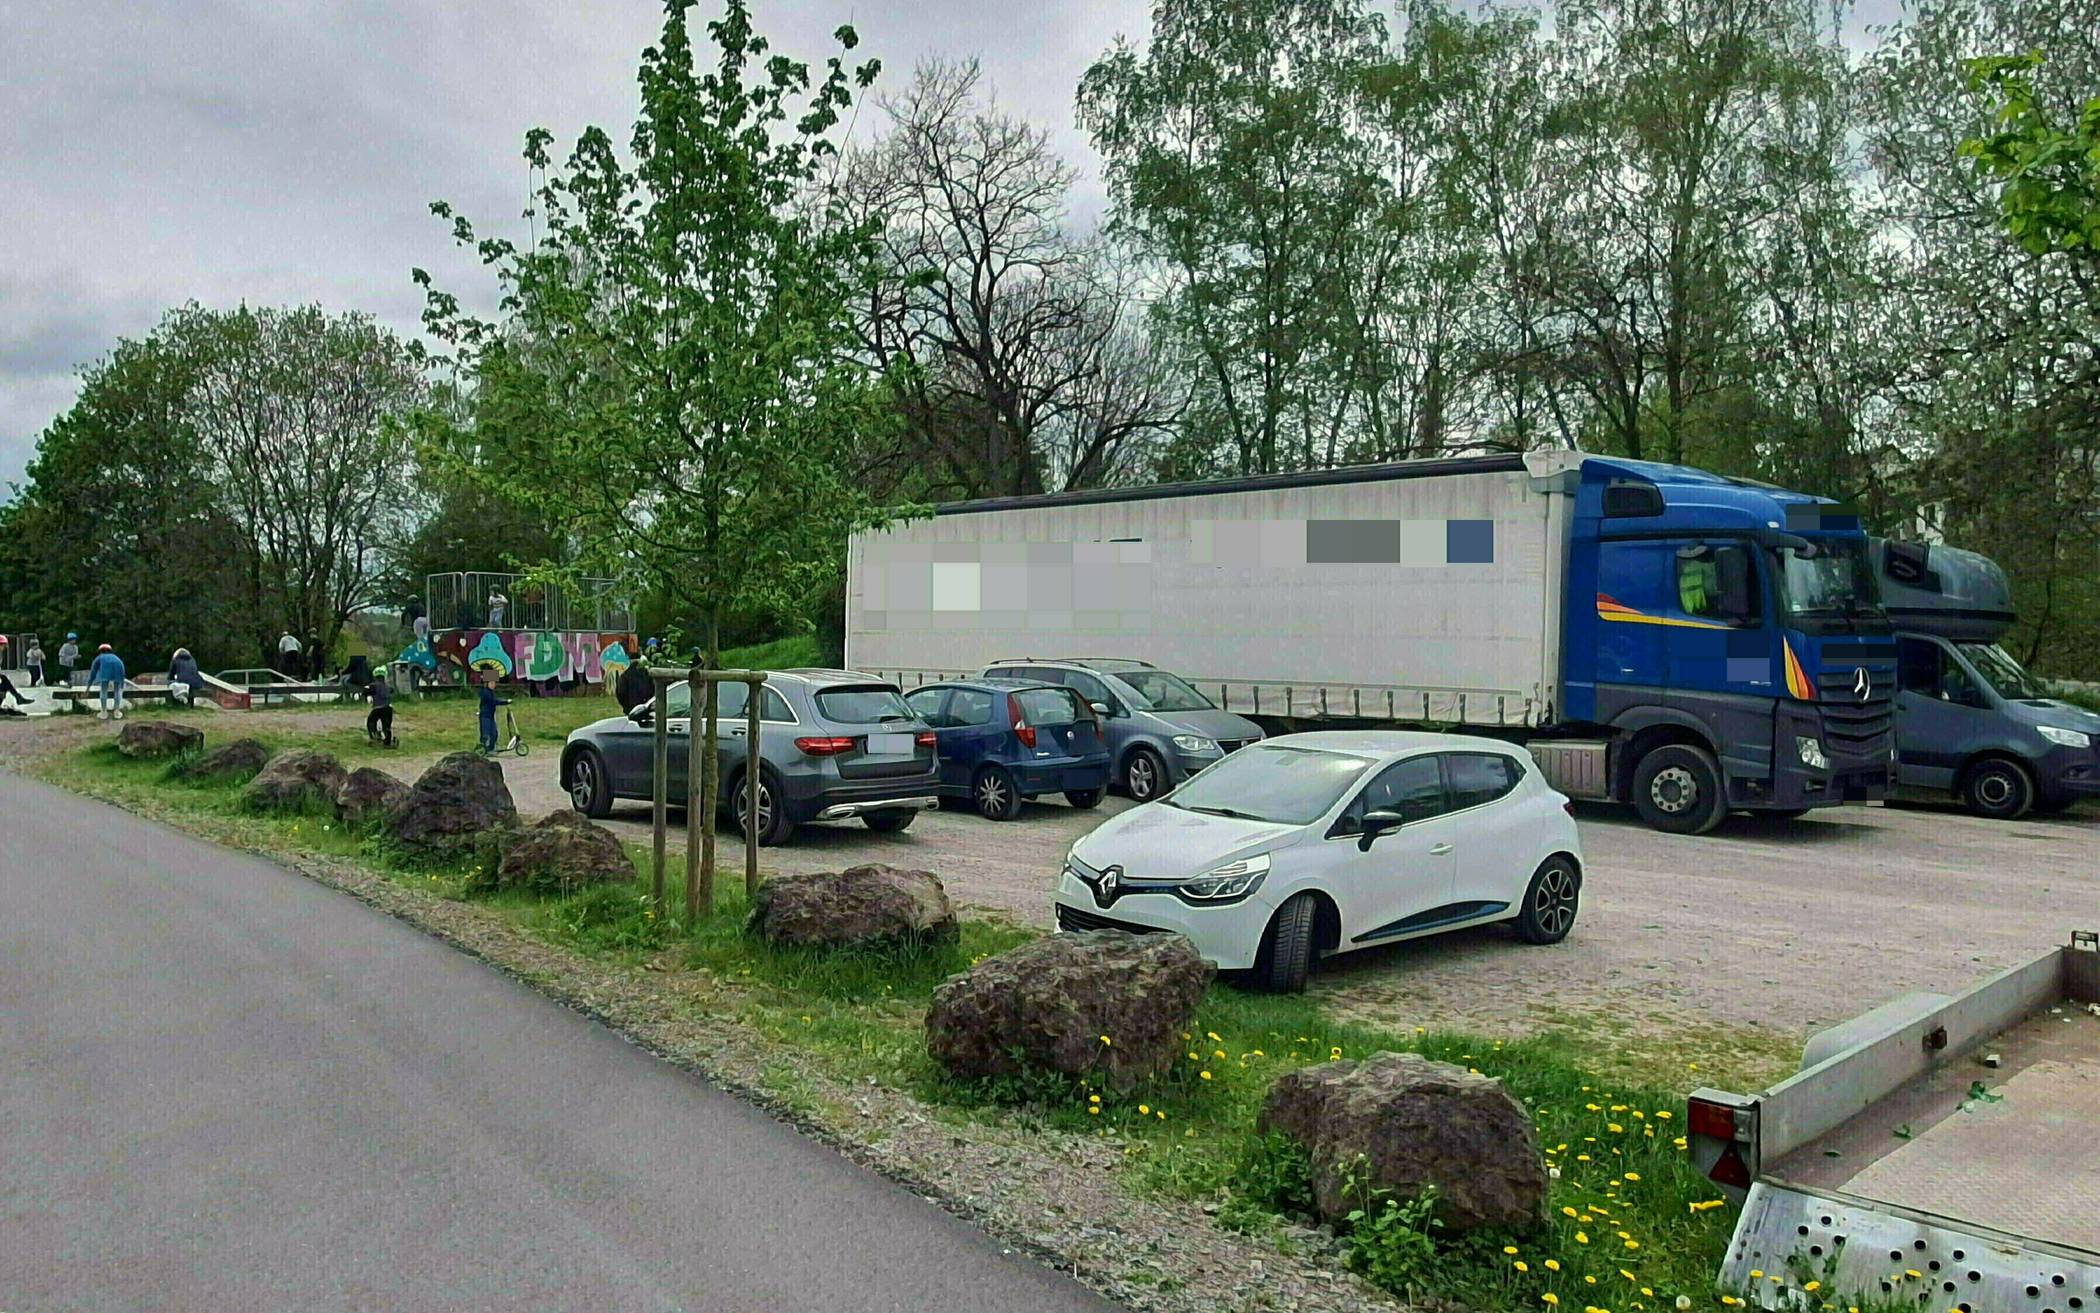 Antrag: Keine LKW auf Parkplatz Homanndamm